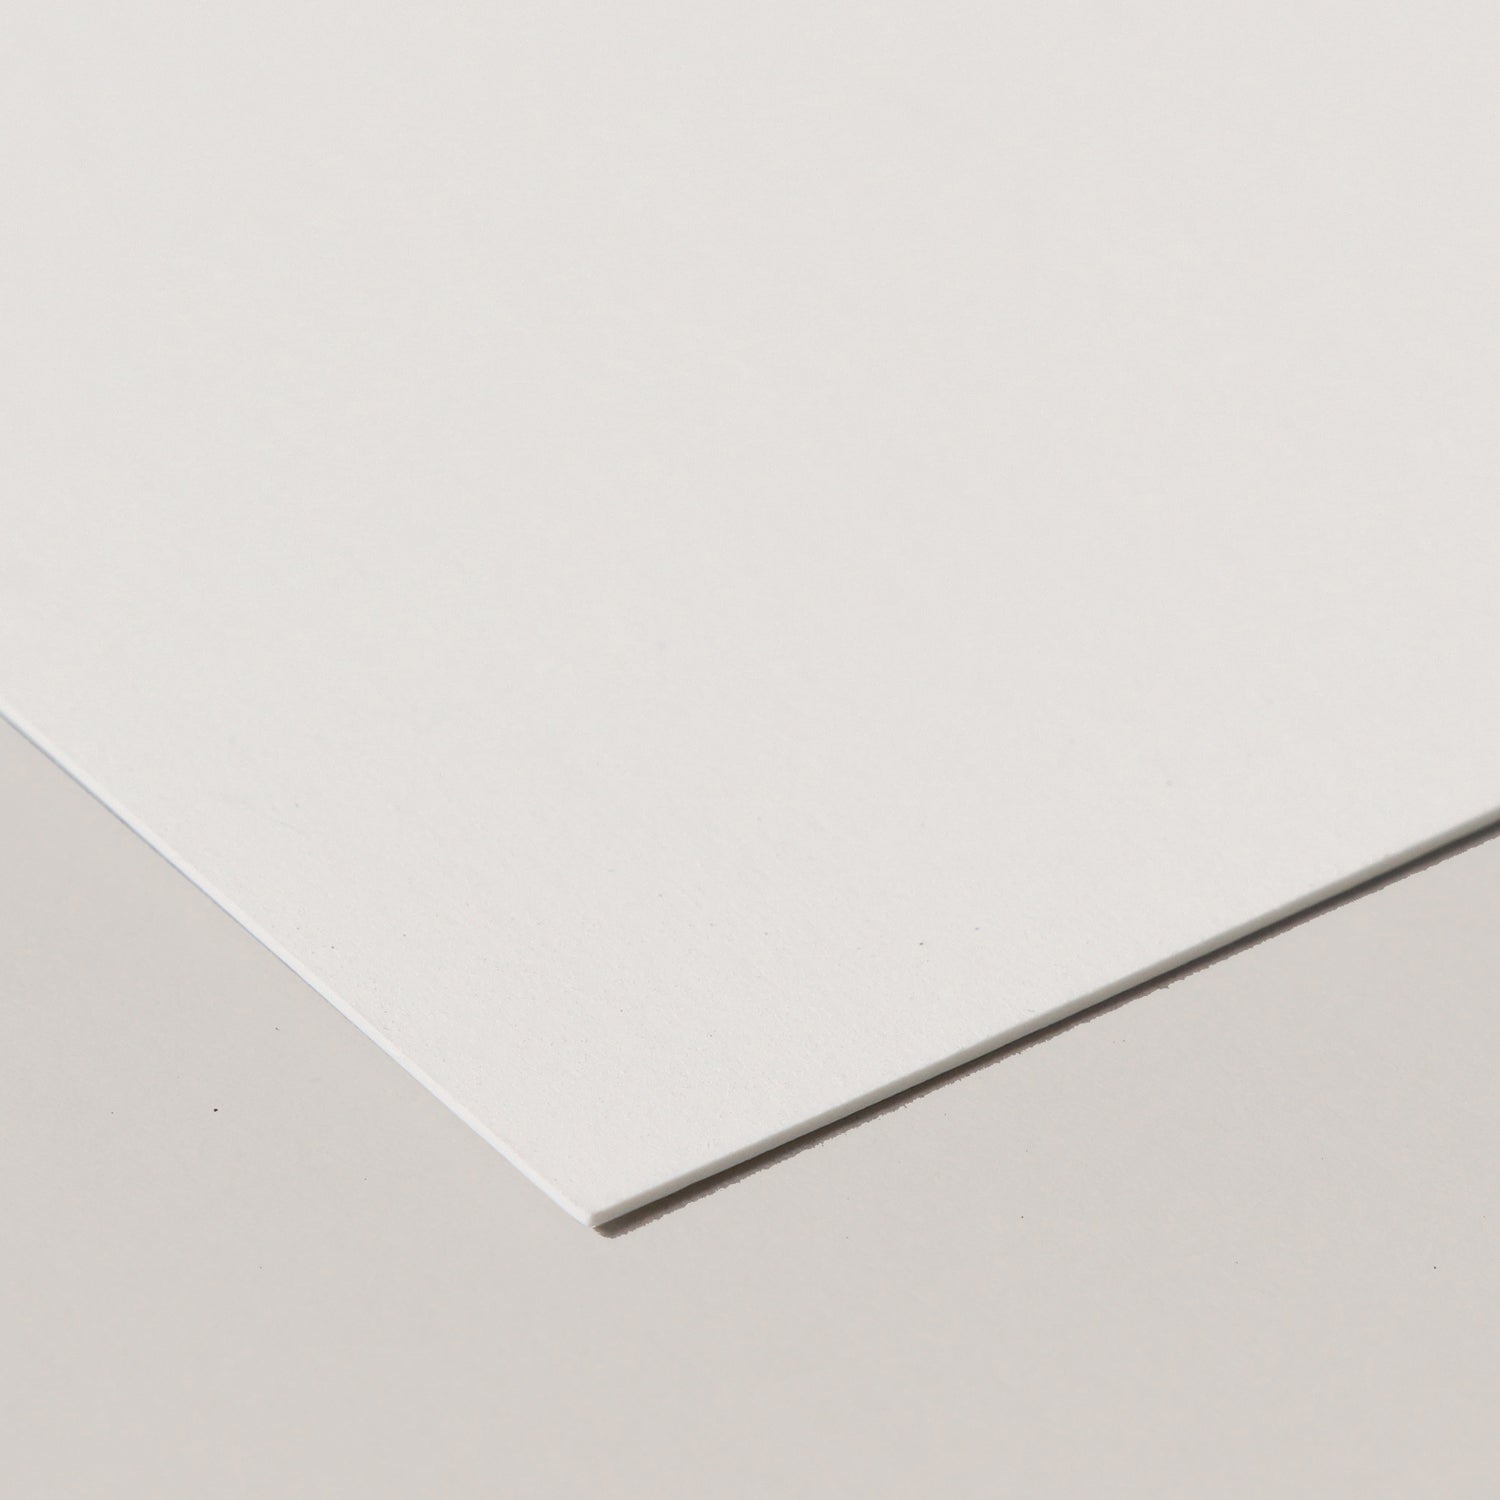 発色の良さと紙の風合いという相反する性質を高いレベルで両立させた高級印刷用紙で、FSC認証※も取得しているヴァンヌーボV-FSの最厚紙を使用。